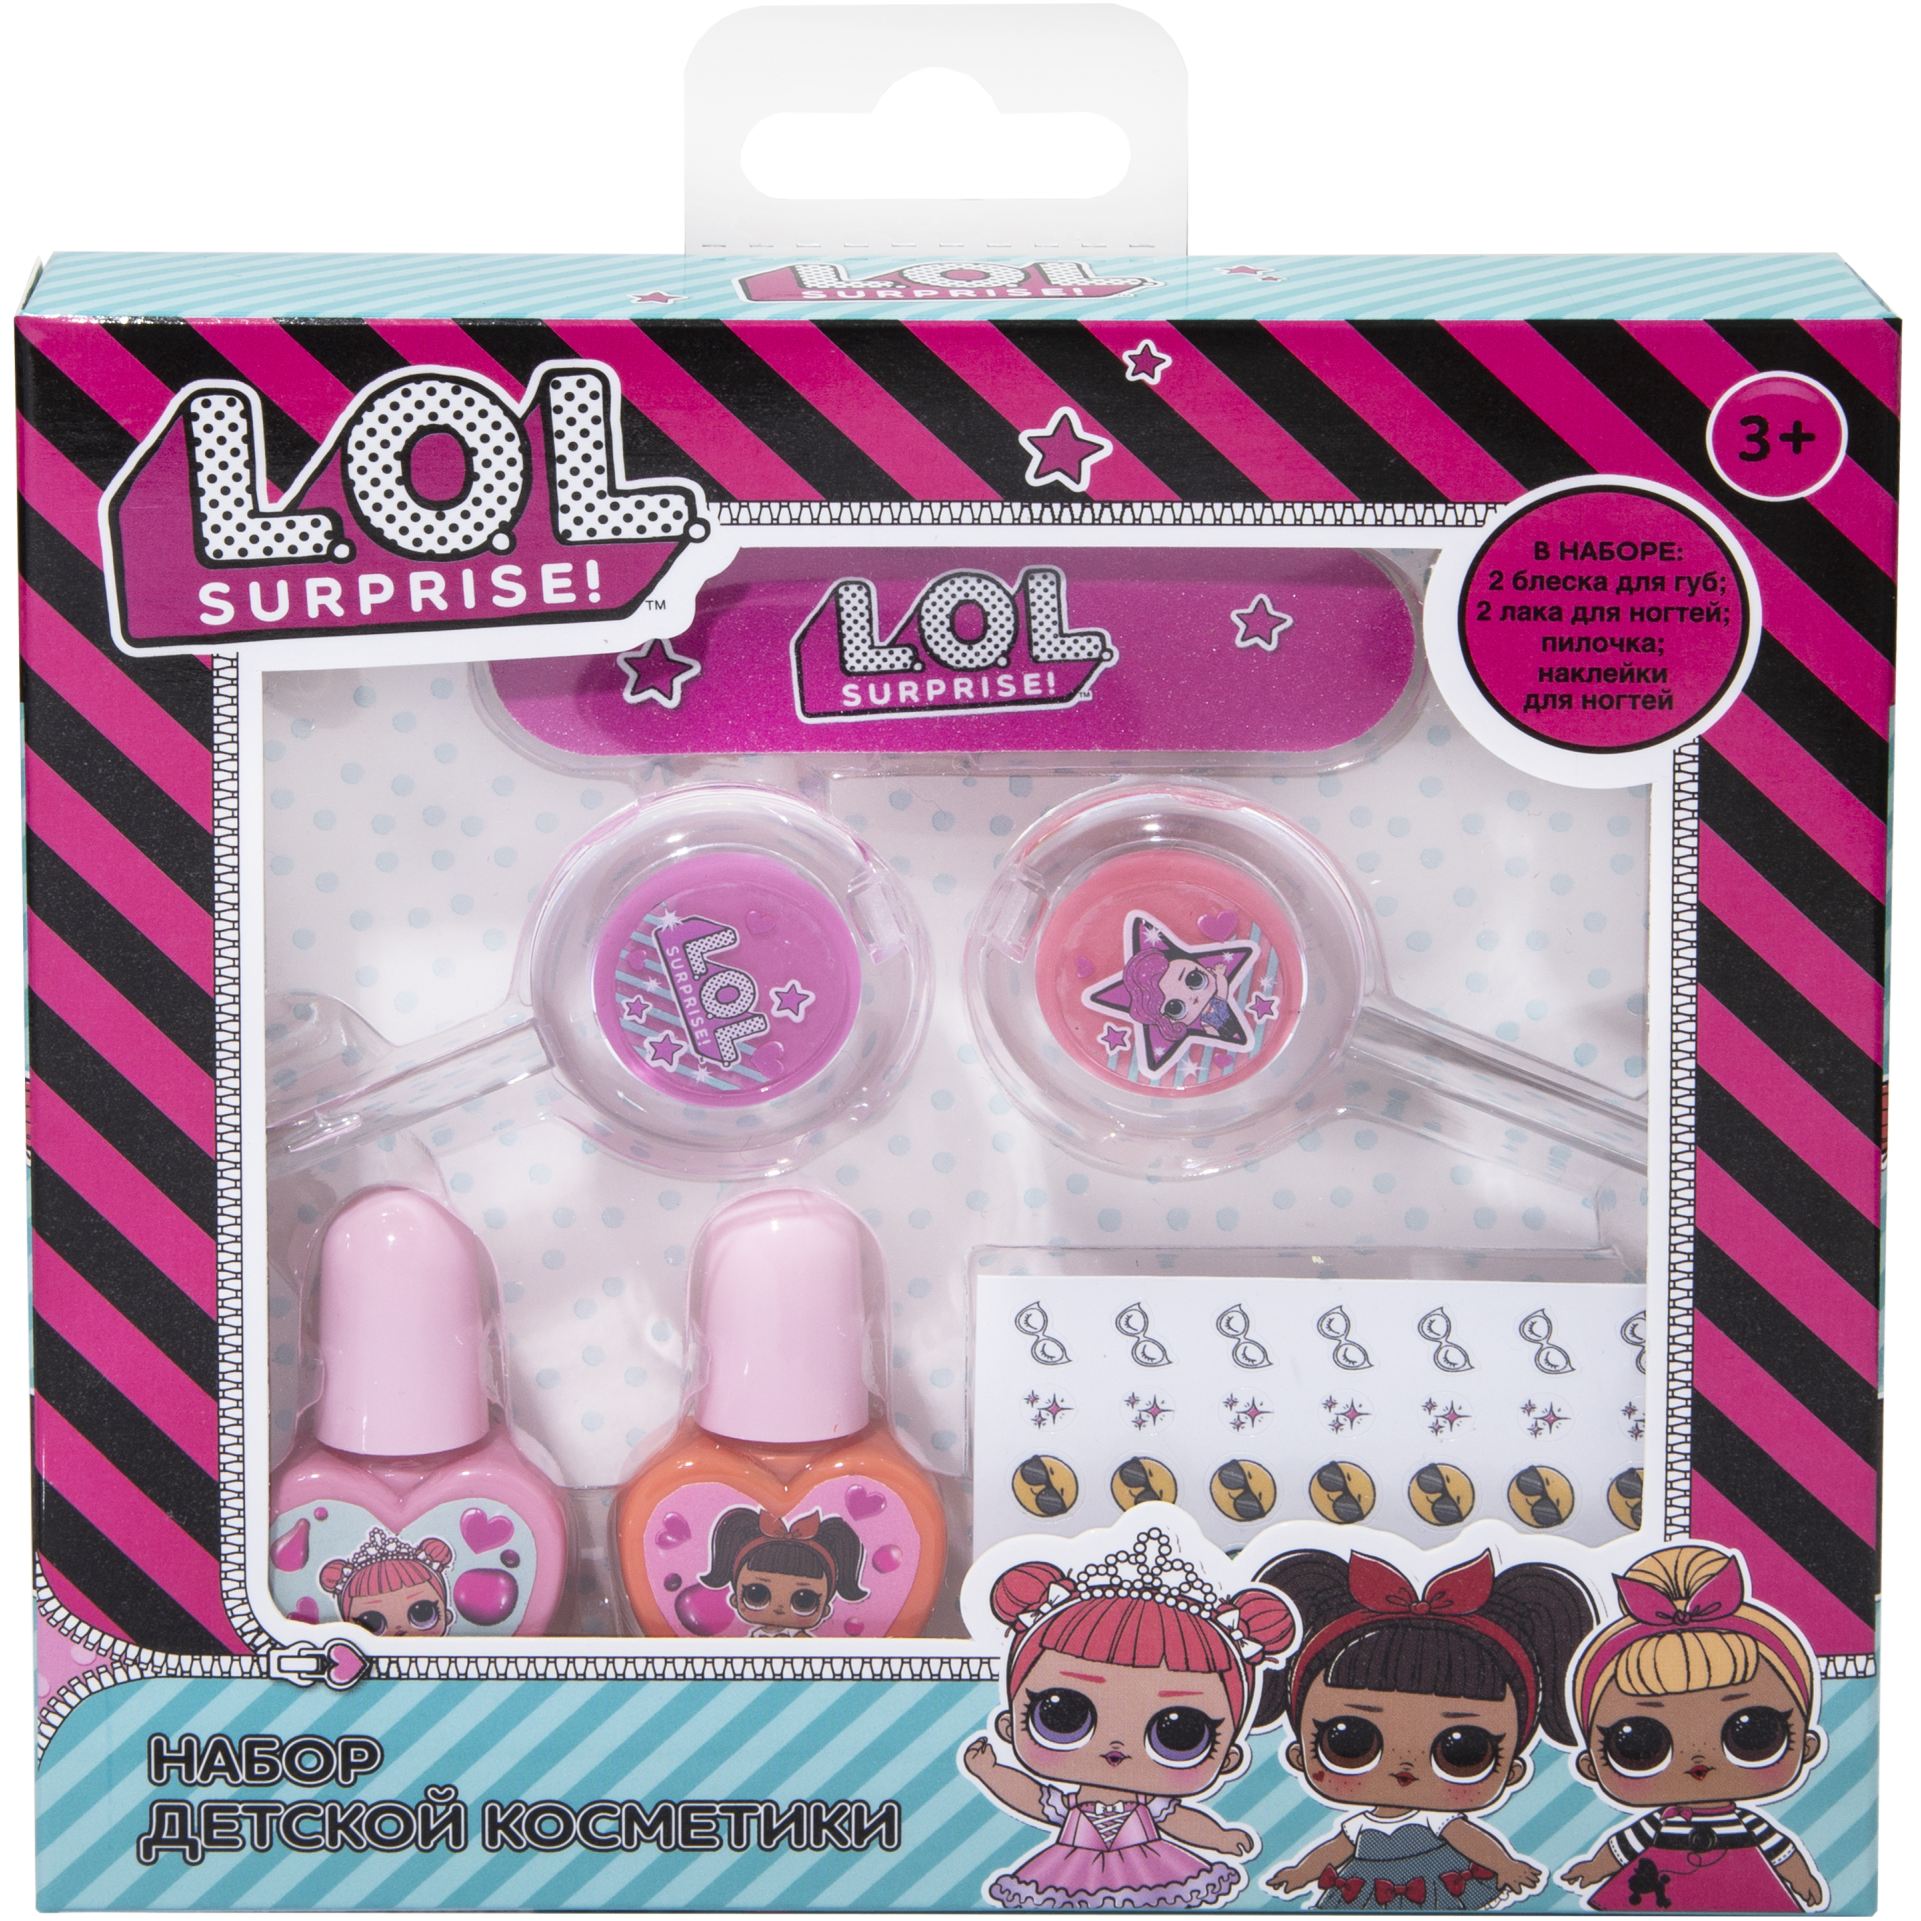 Набор детской косметики L.O.L. для губ и ногтей YZ-1602